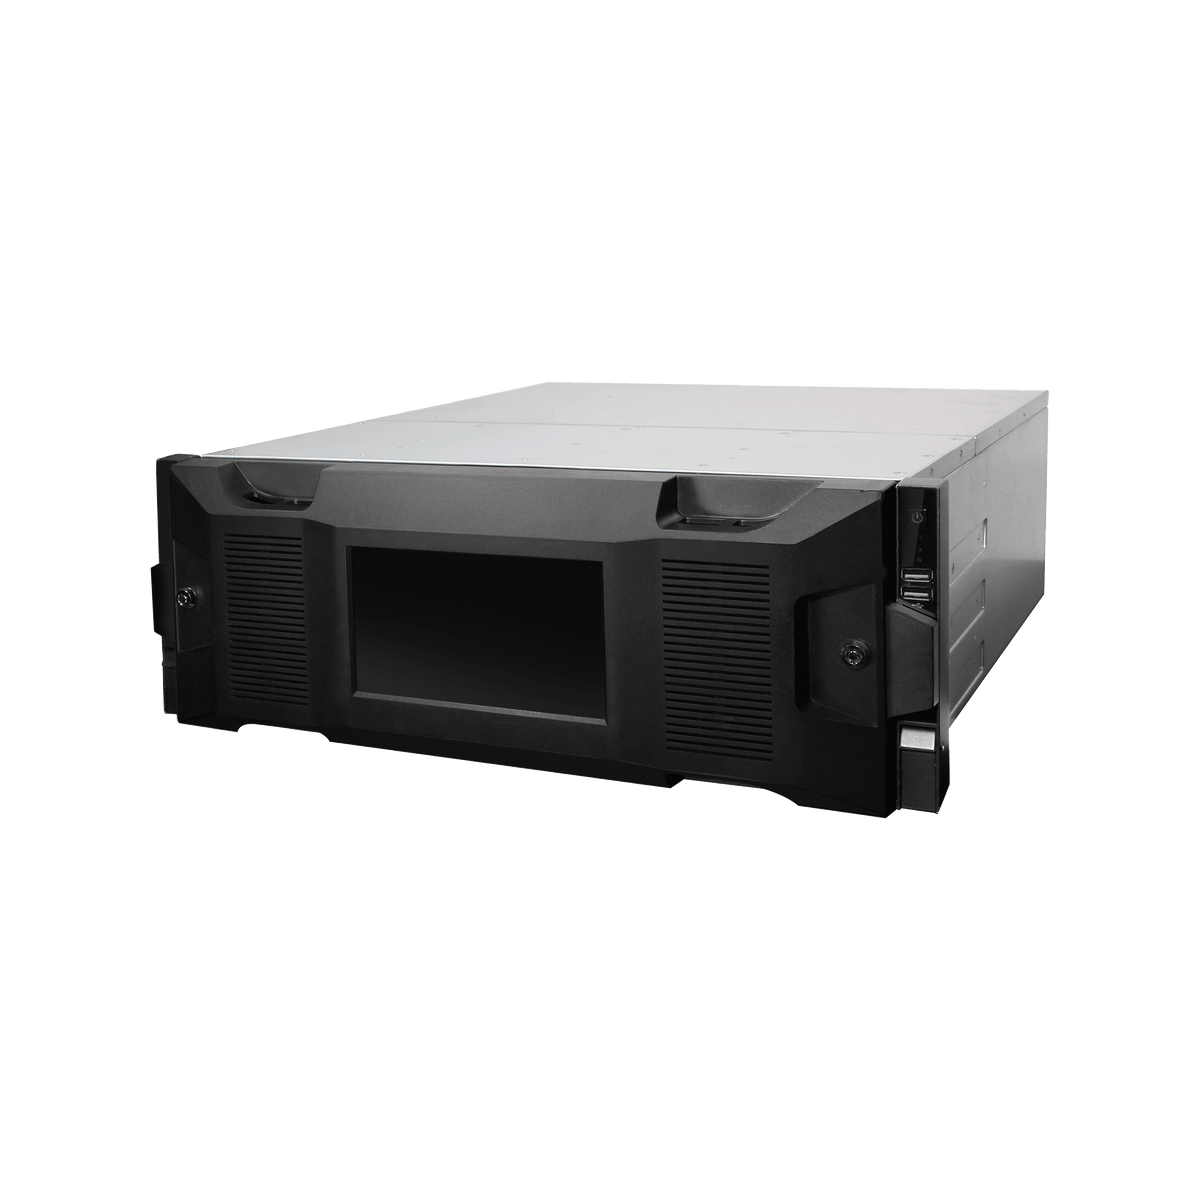 DAHUA IVSS7024DR-8M 4U 24HDDs WizMind Intelligent Video Surveillance Server